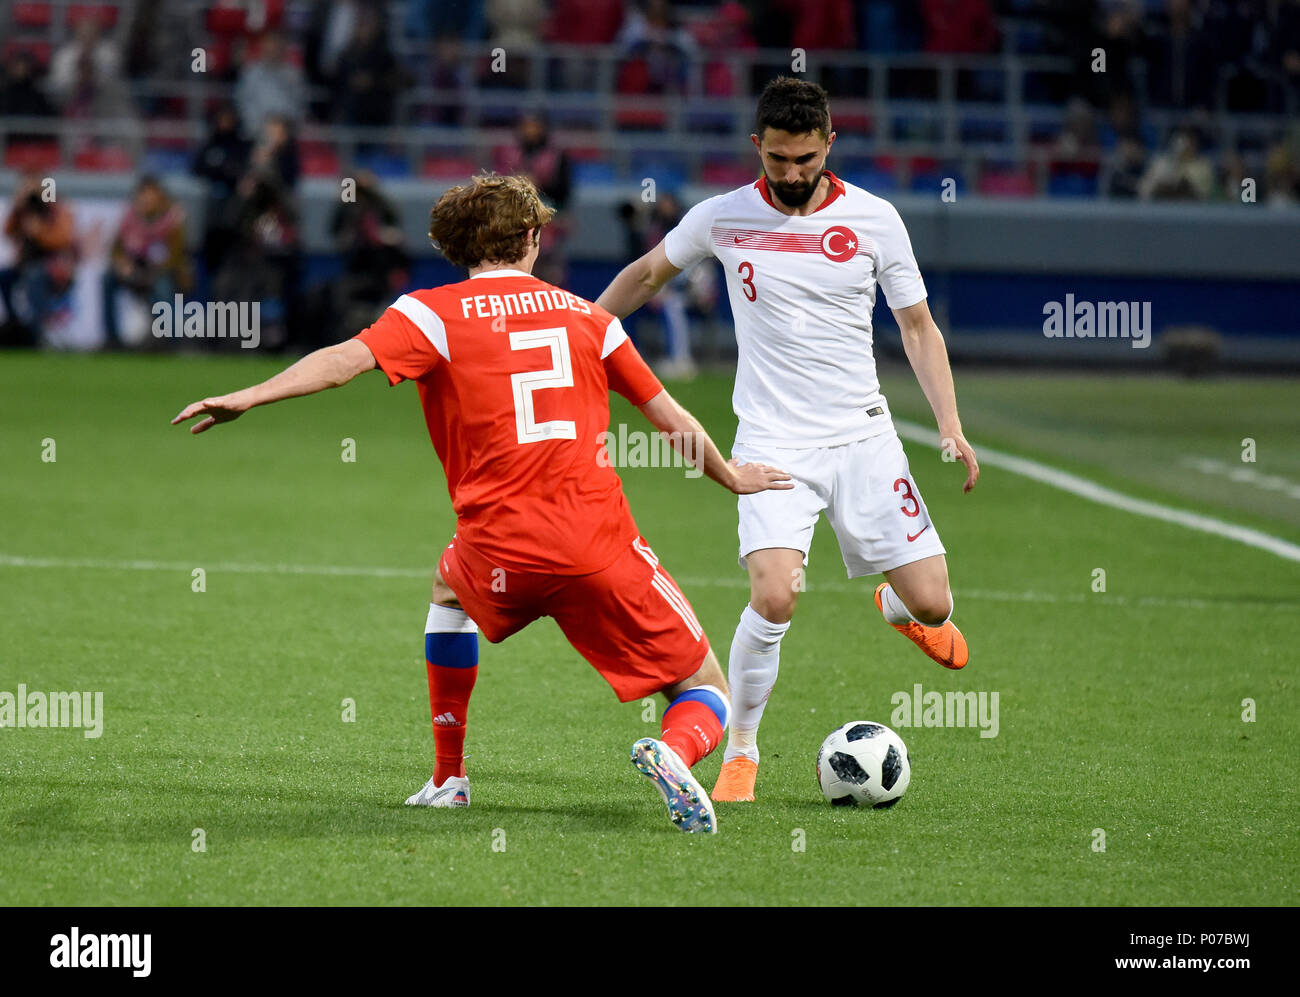 Moscou, Russie - le 5 juin 2018. Wingback turc Hasan Ali Kaldirim et Fédération de defender Mario Fernandes lors d'un match amical contre la Russie Banque D'Images